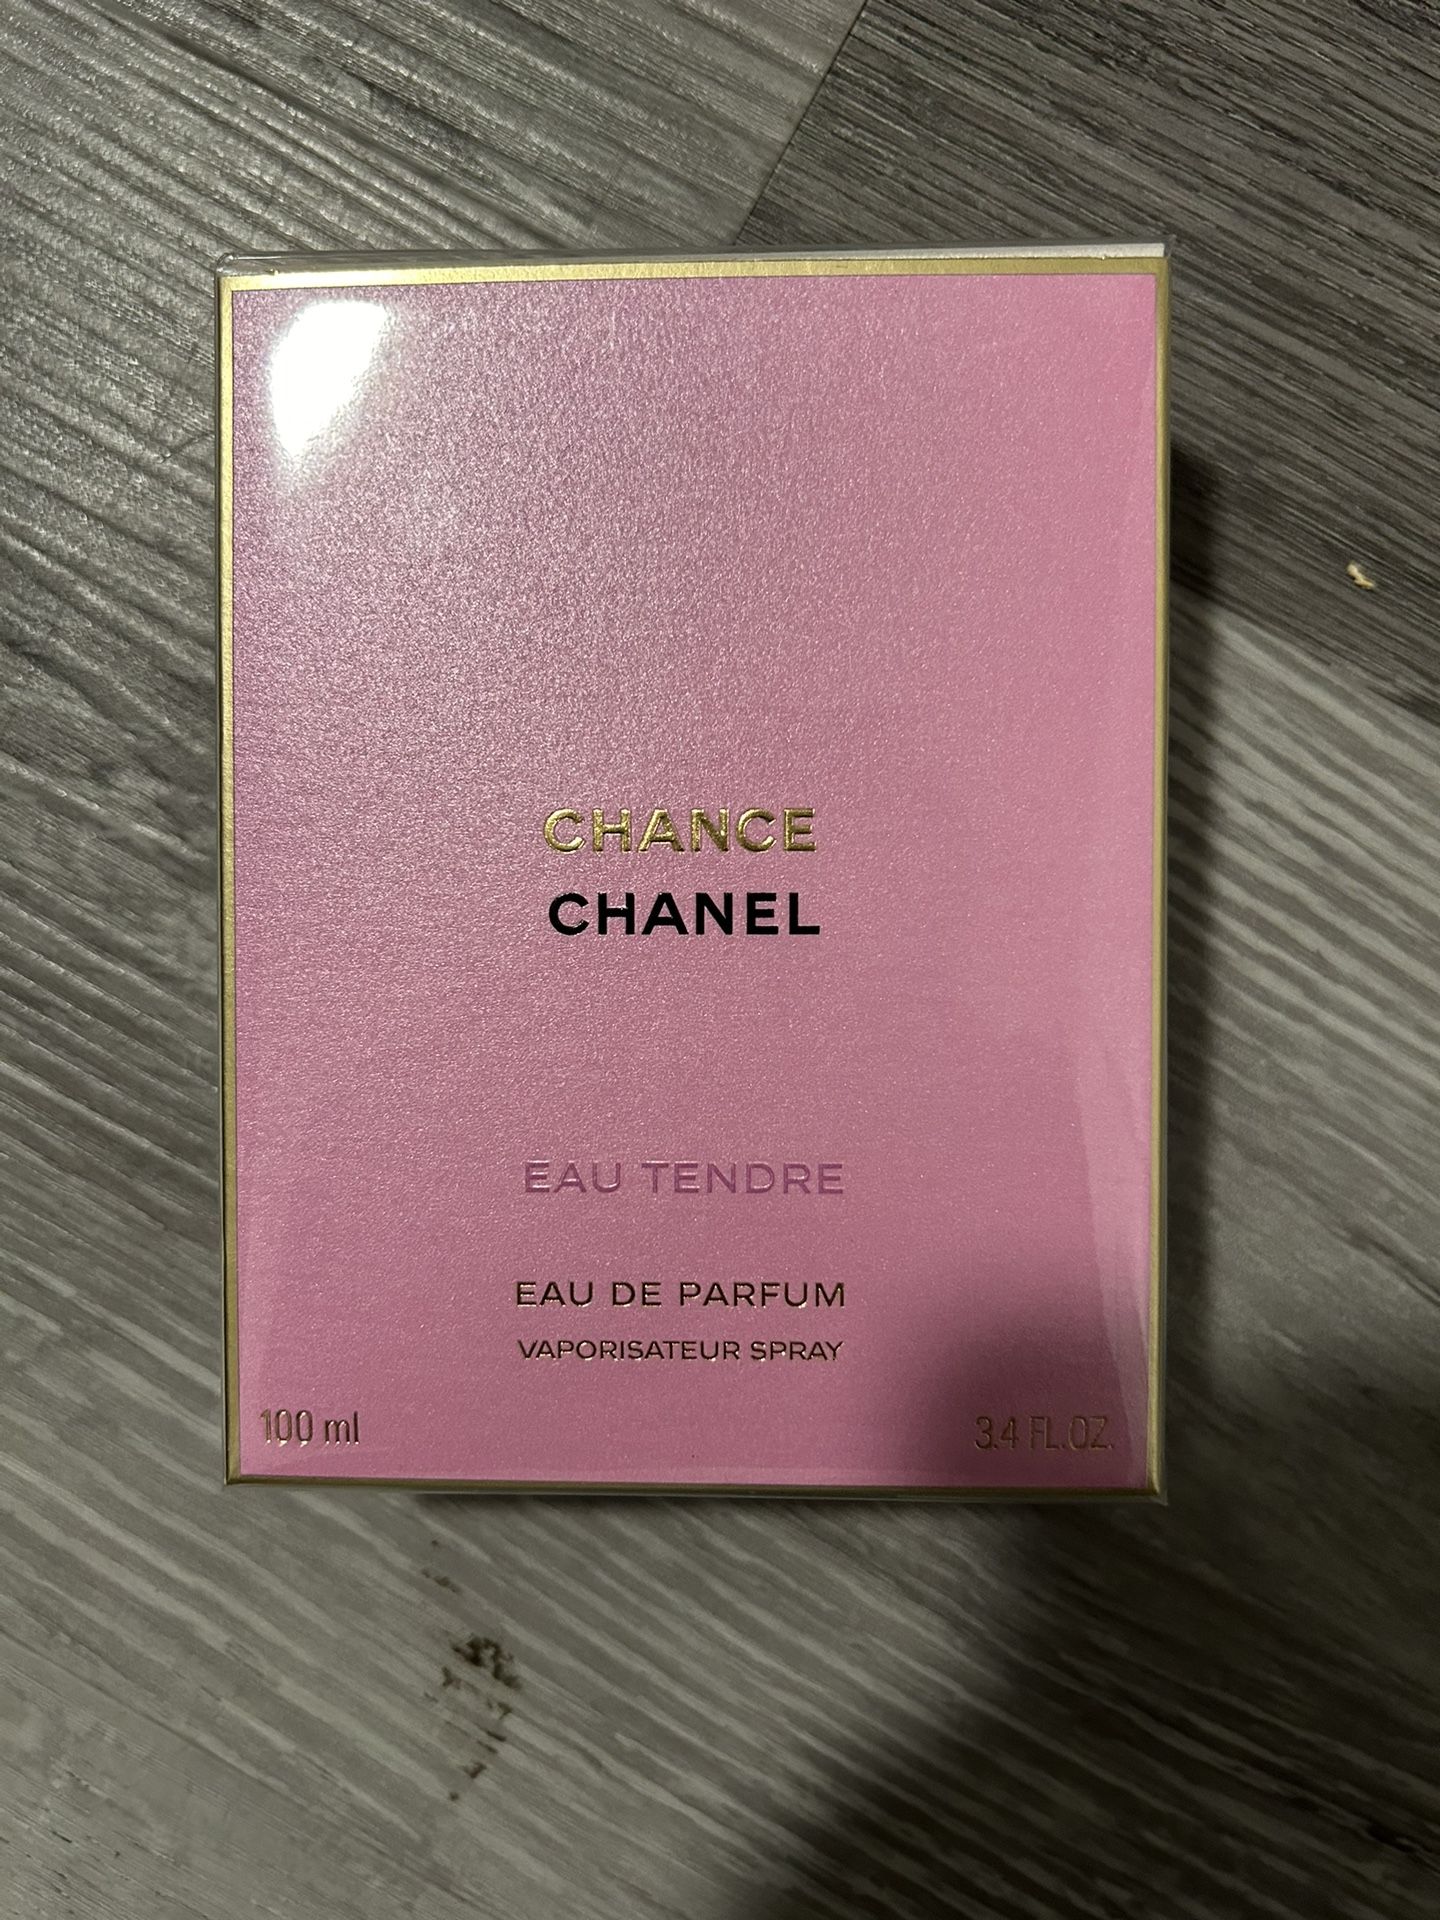 CHANCE EAU TENDRE Eau de Parfum Spray, 3.4-oz.